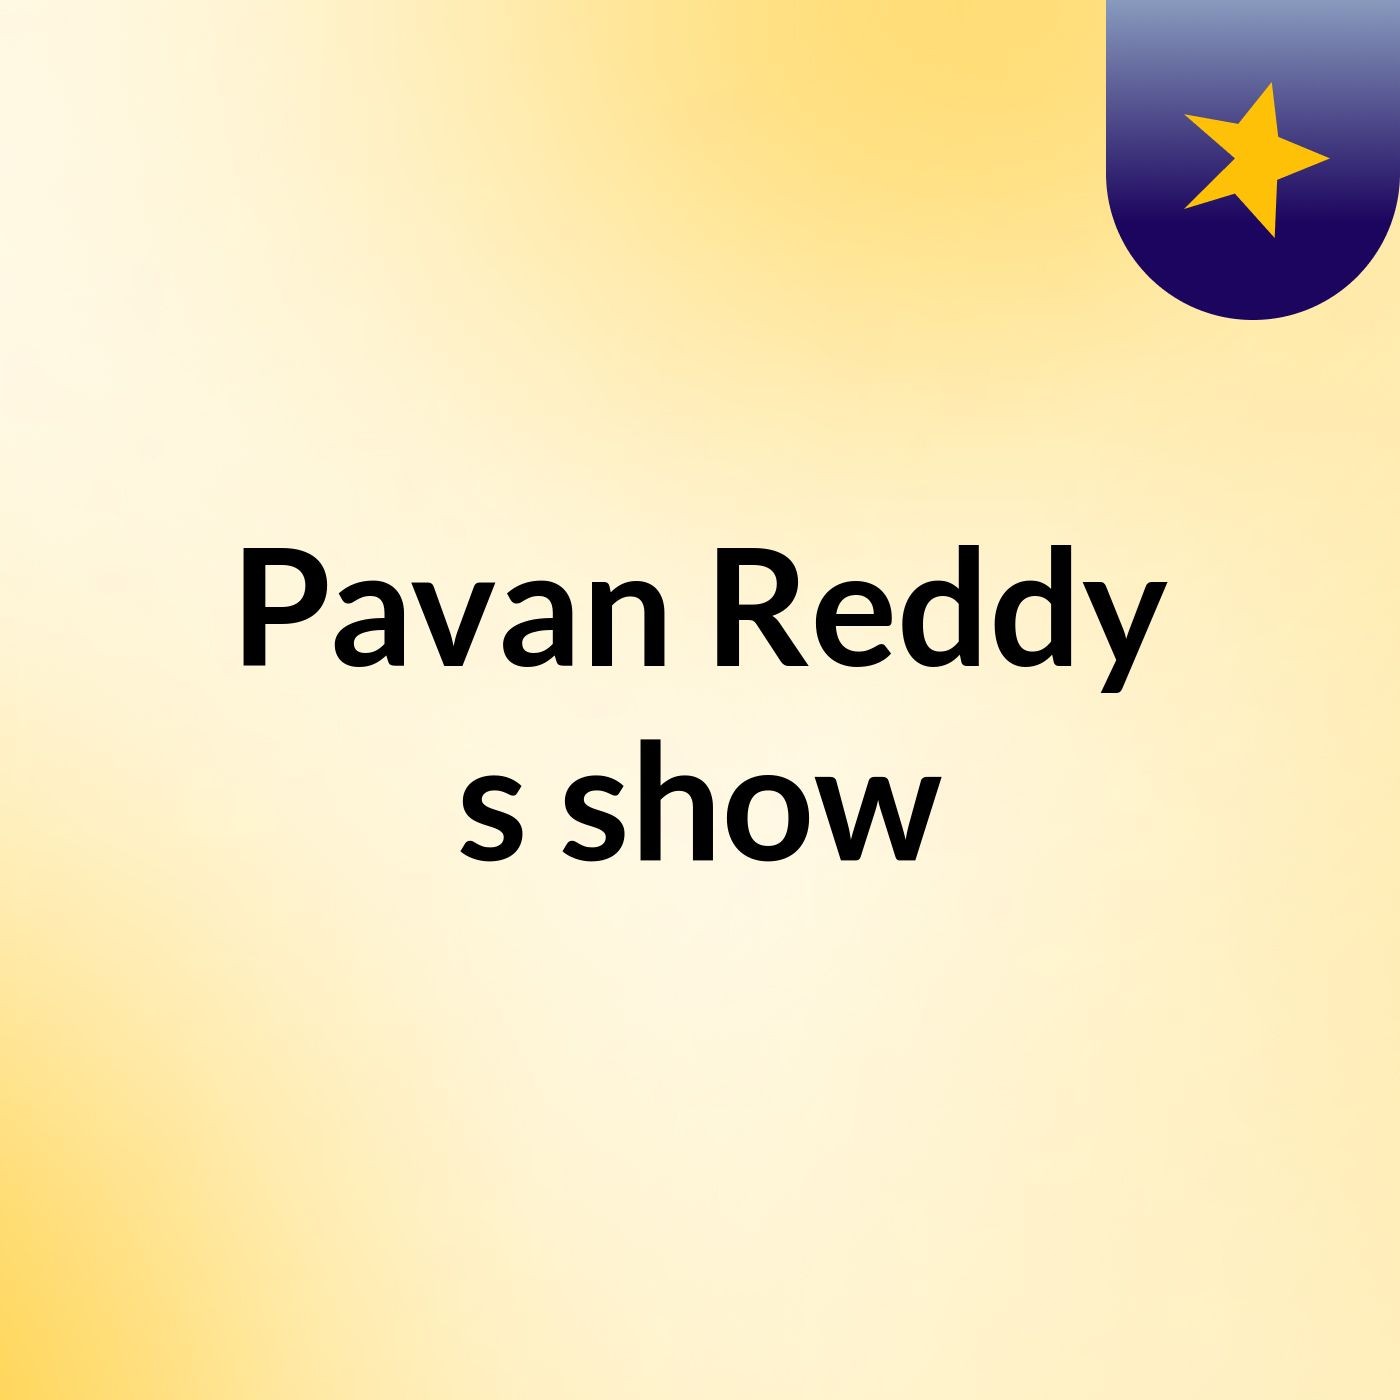 Pavan Reddy's show